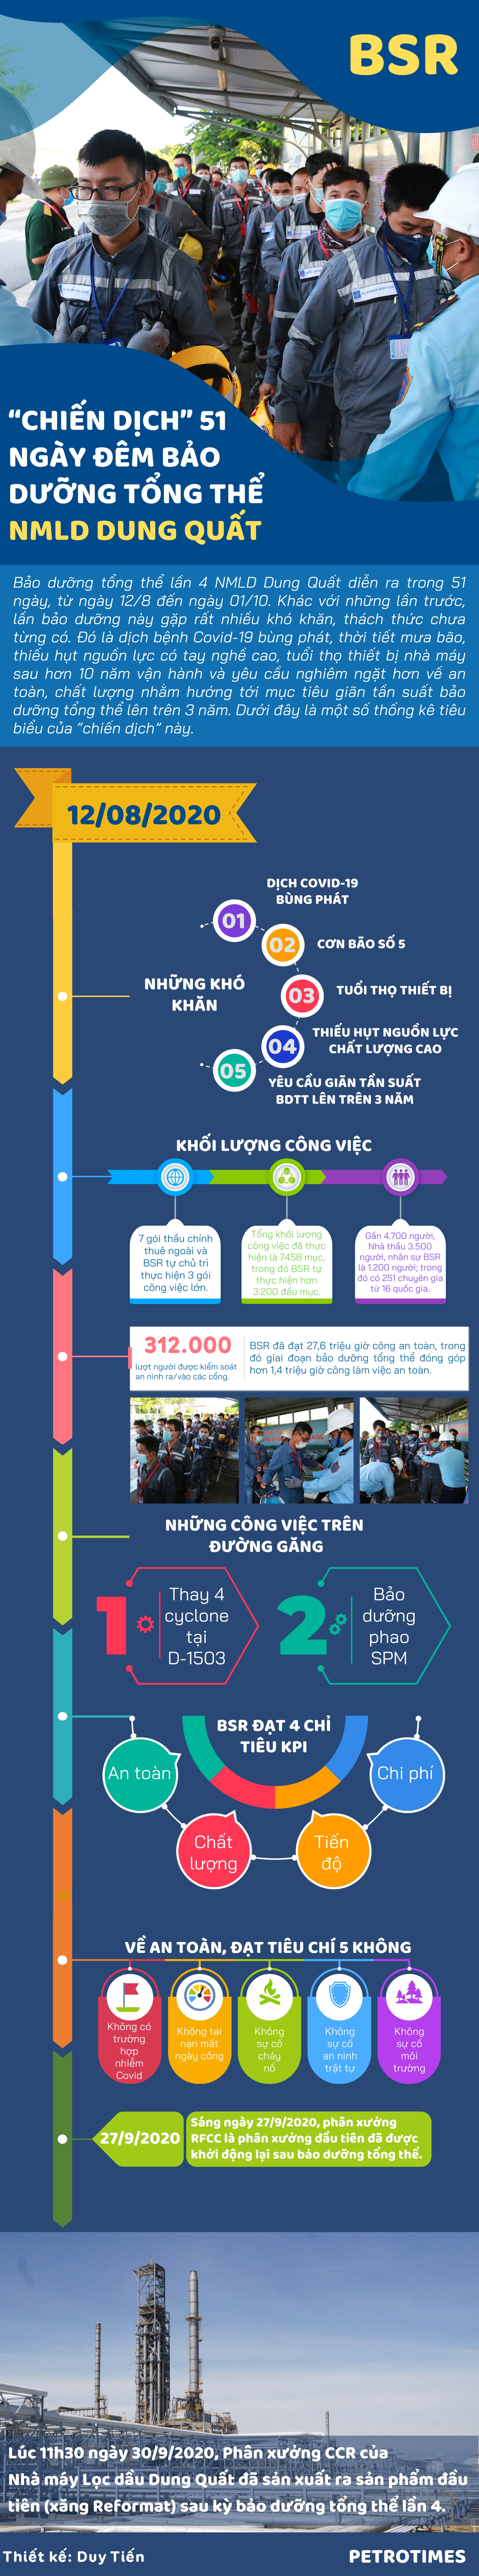 [Infographic] “Chiến dịch” 51 ngày đêm bảo dưỡng tổng thể NMLD Dung Quất